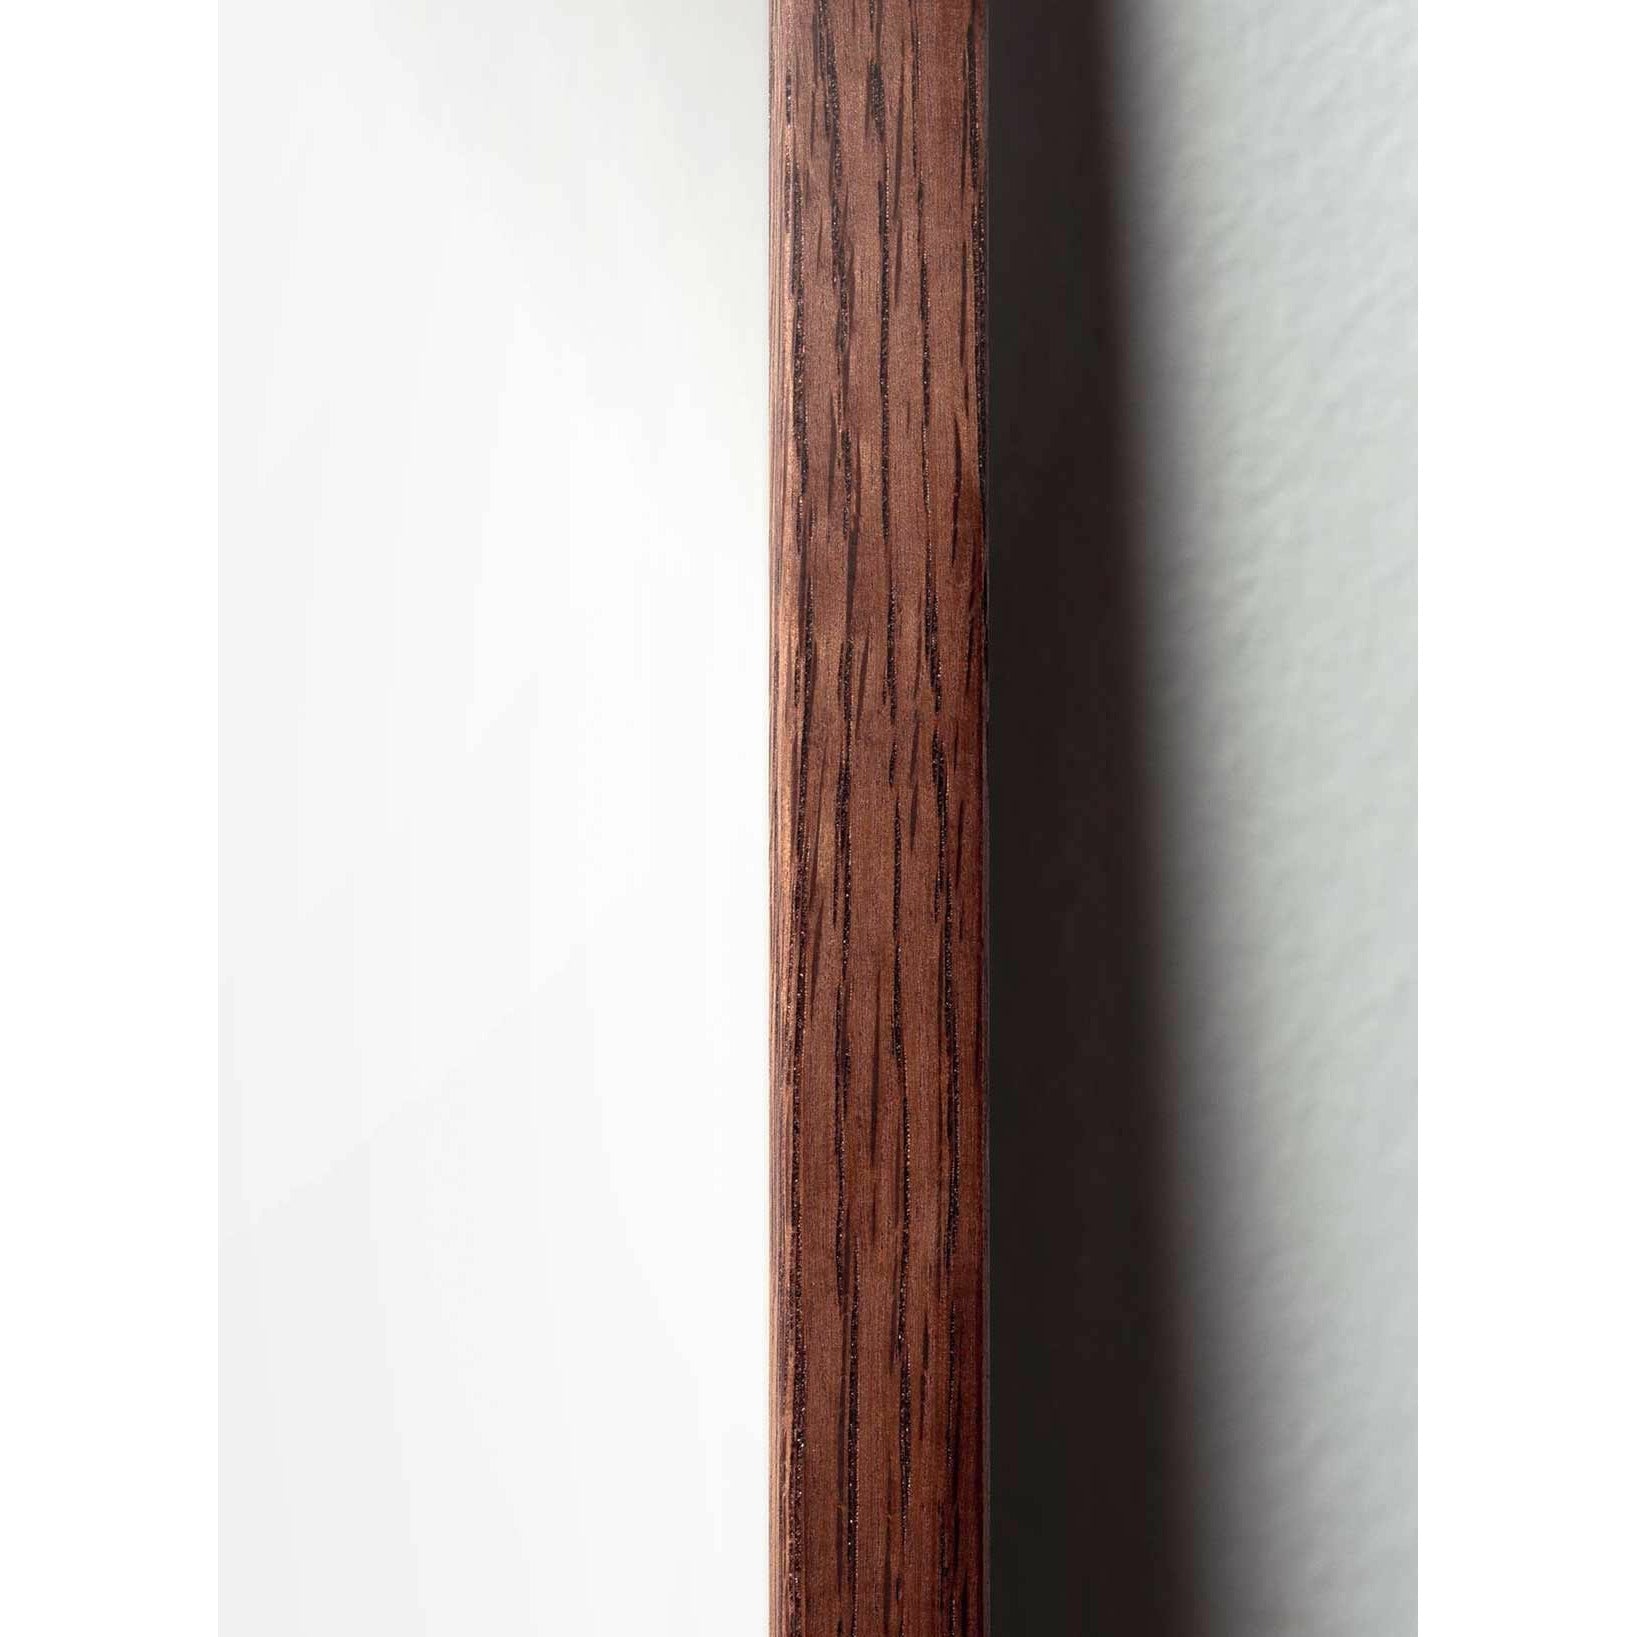 Póster clásico de cono de pino de creación, marco de madera oscura A5, fondo amarillo